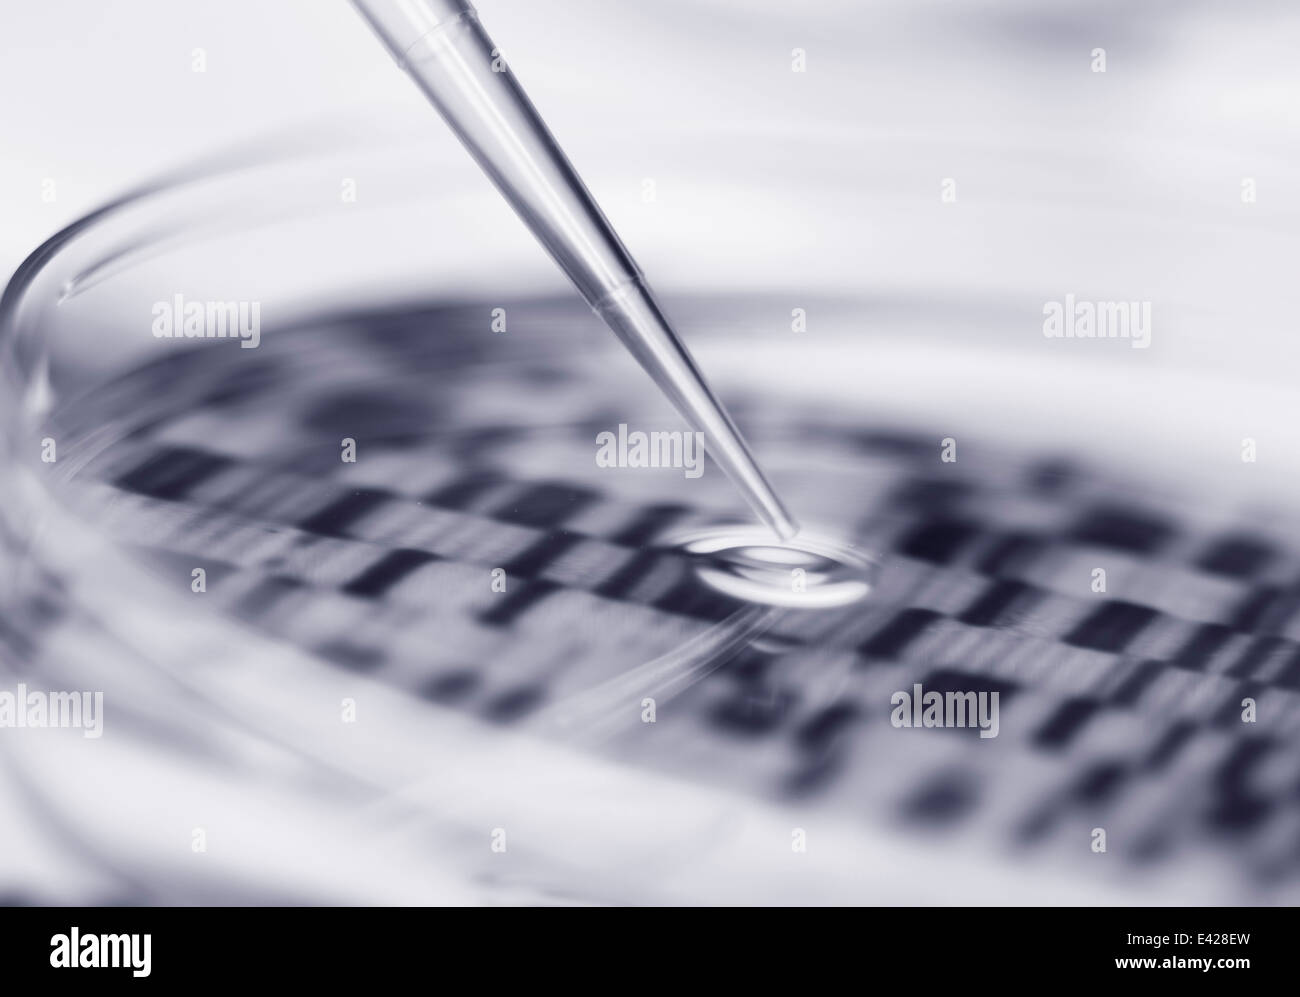 El ADN (ácido desoxirribonucleico) en una placa de Petri autoradiogram Foto de stock